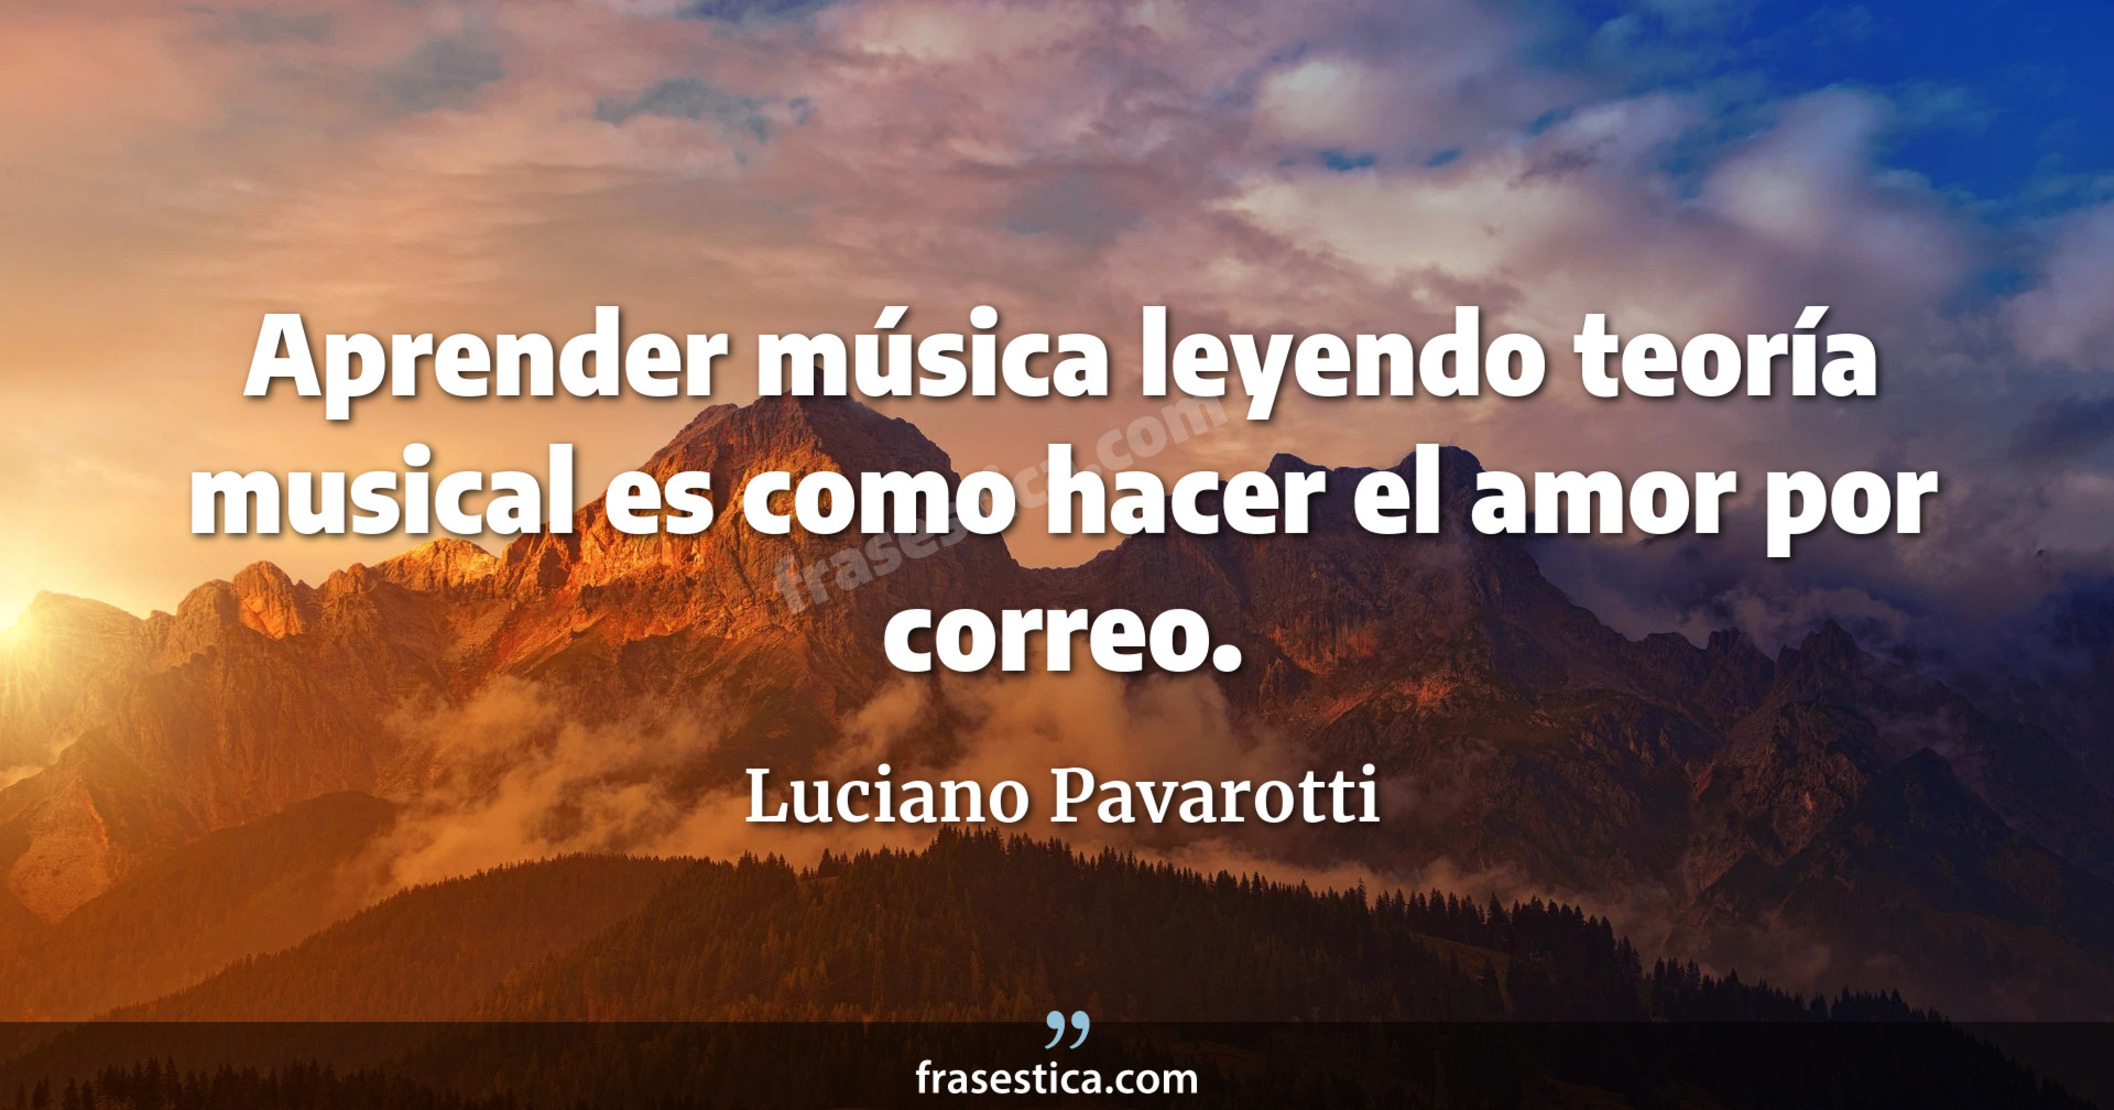 Aprender música leyendo teoría musical es como hacer el amor por correo. - Luciano Pavarotti